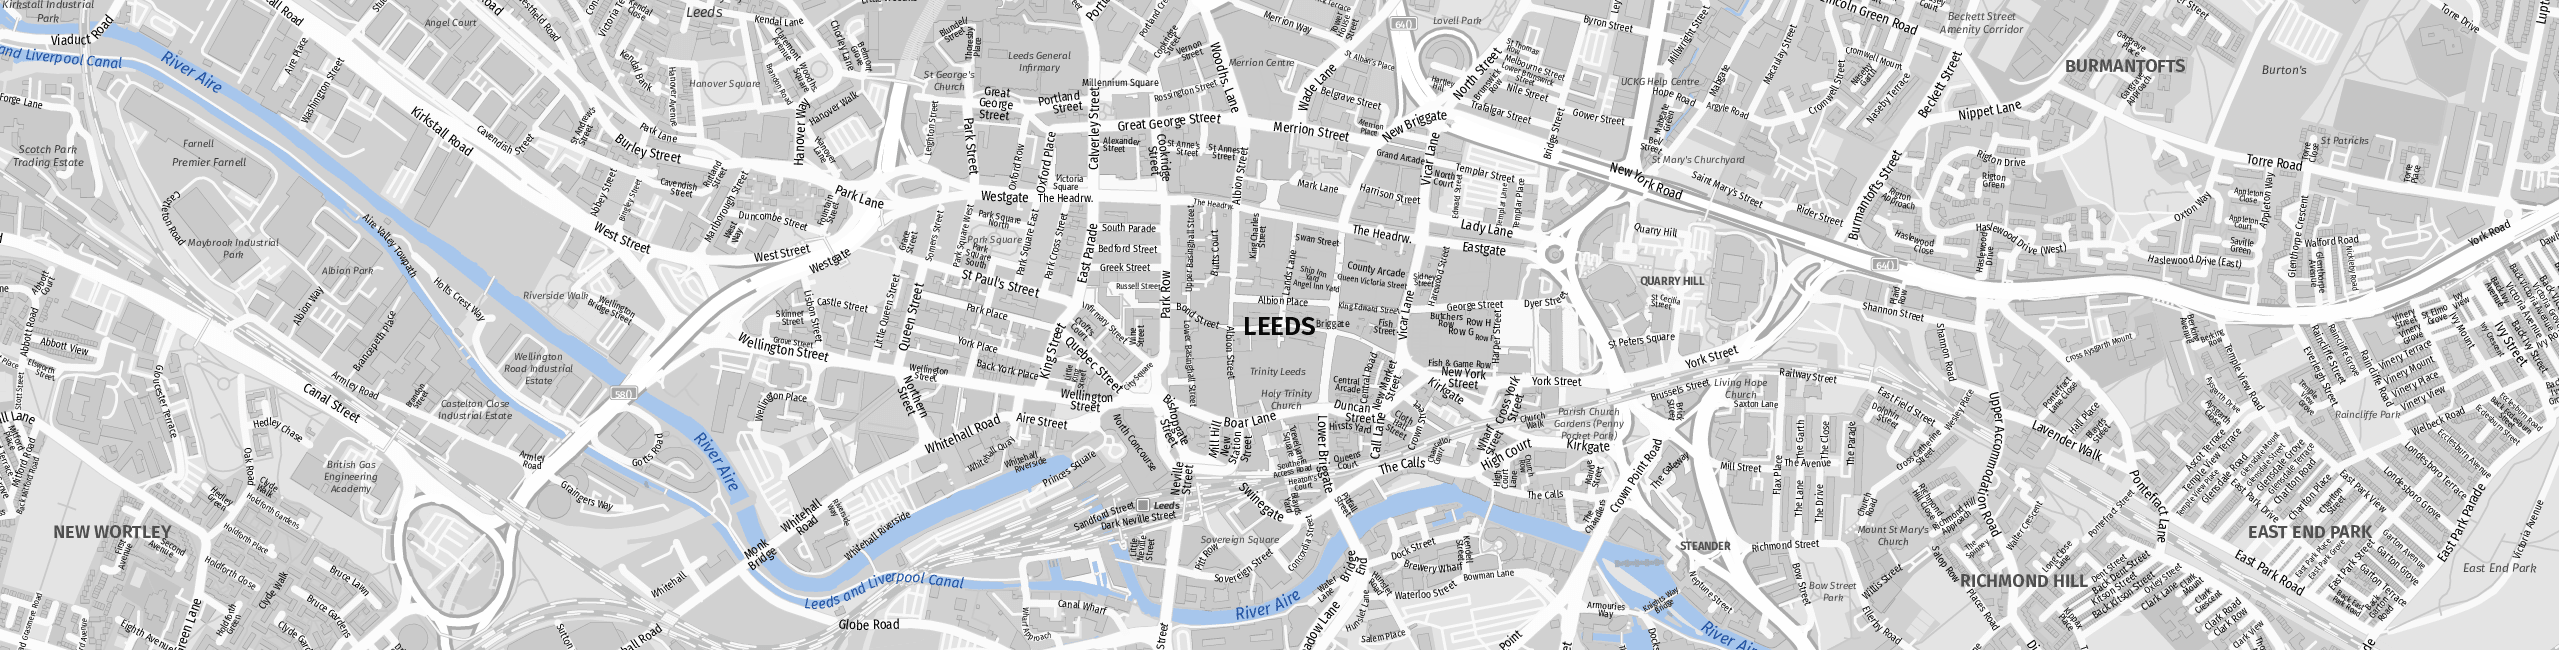 Stadtplan Leeds zum Downloaden.